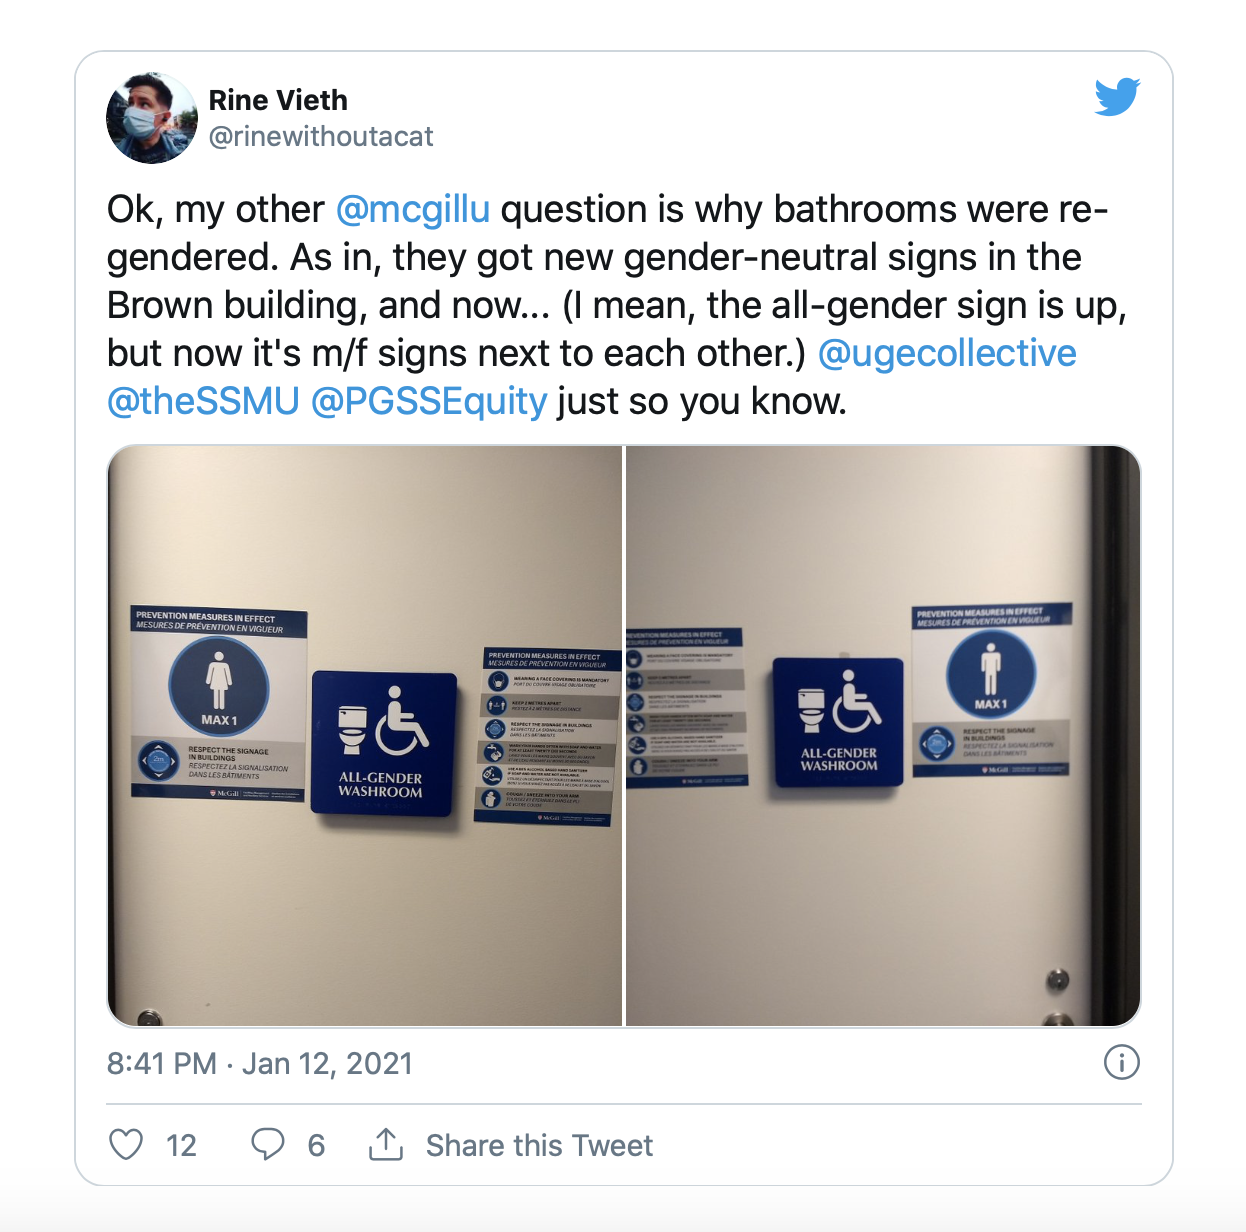 gender-neutral restroom and policies tweet